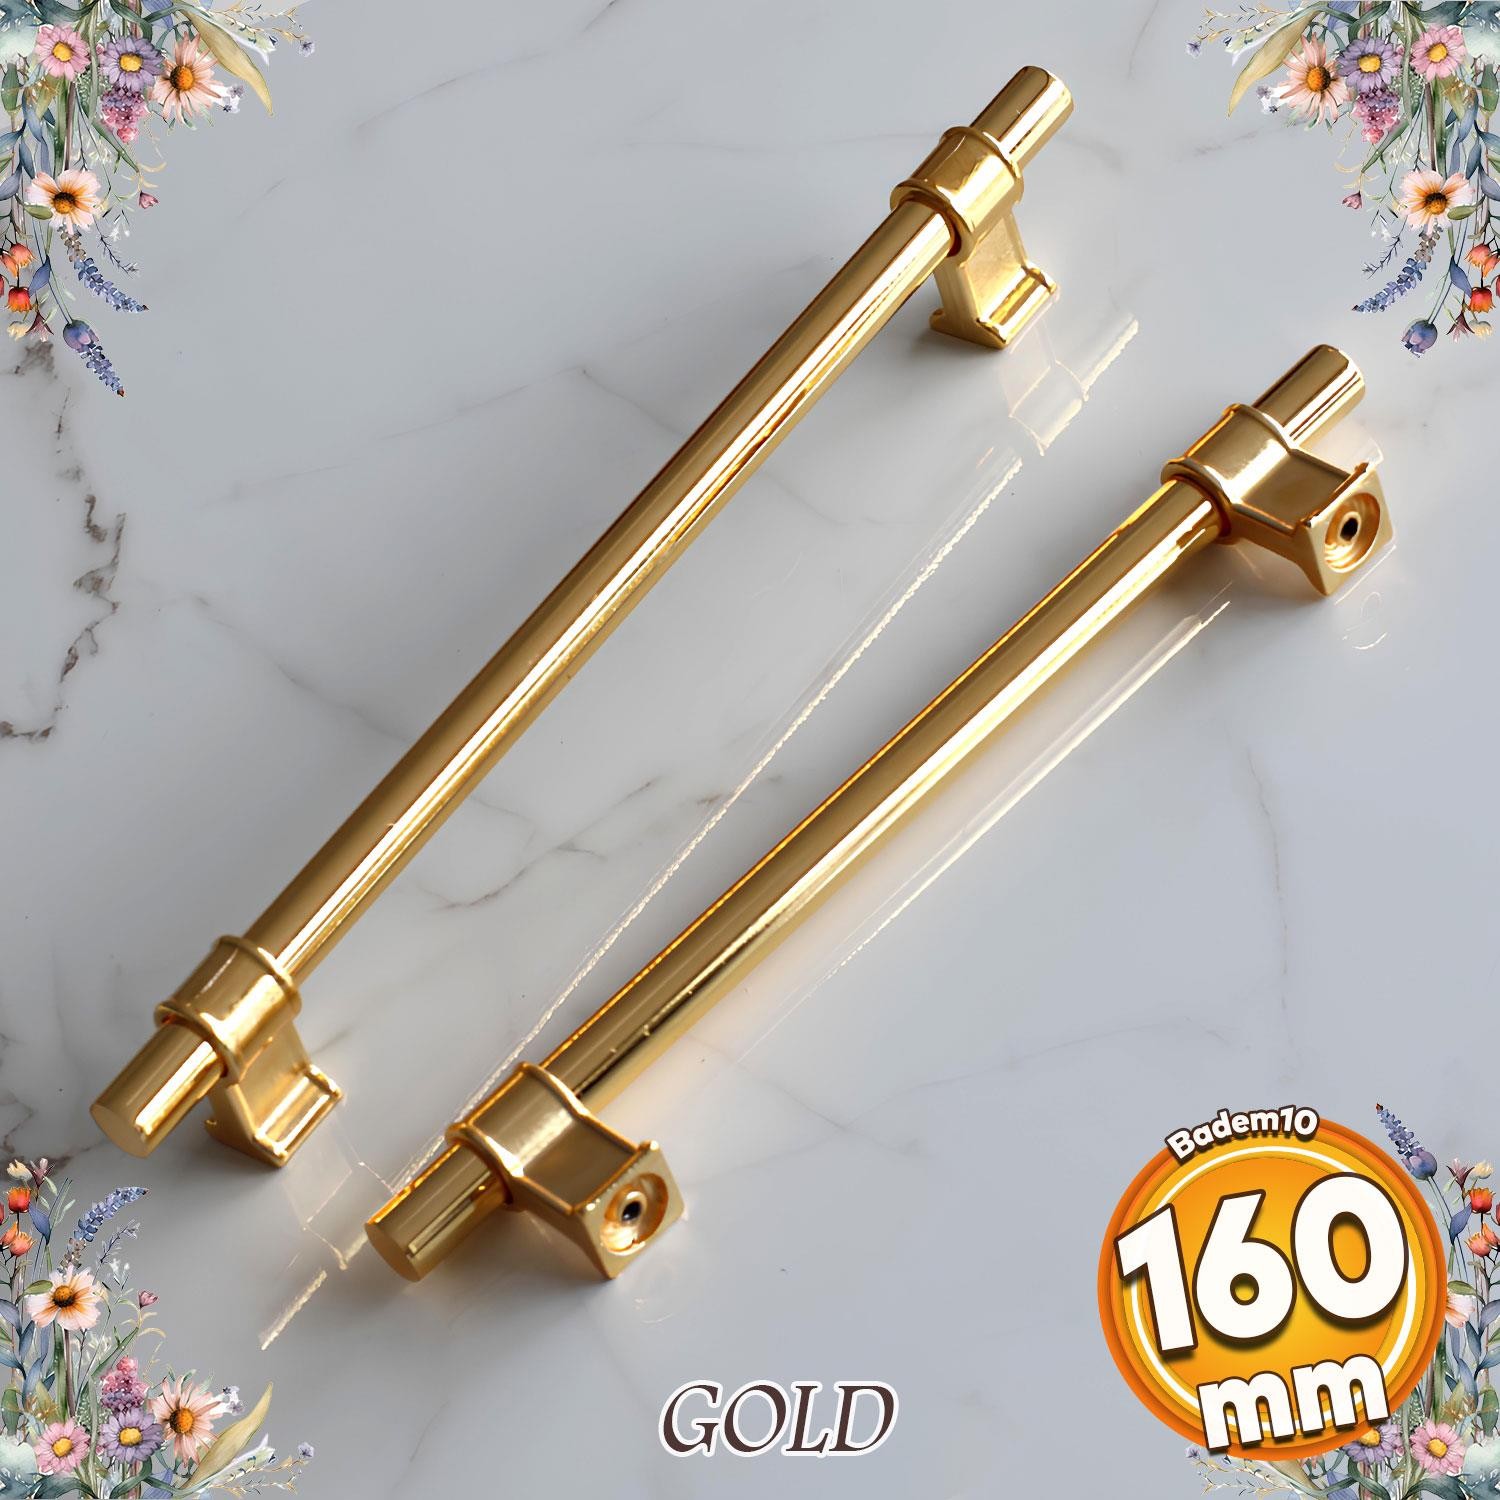 Hisar Altın Gold Düz Metal Kulp 160 mm Mobilya Çekmece Mutfak Dolabı Dolap Kulpları Kulpu Kulbu